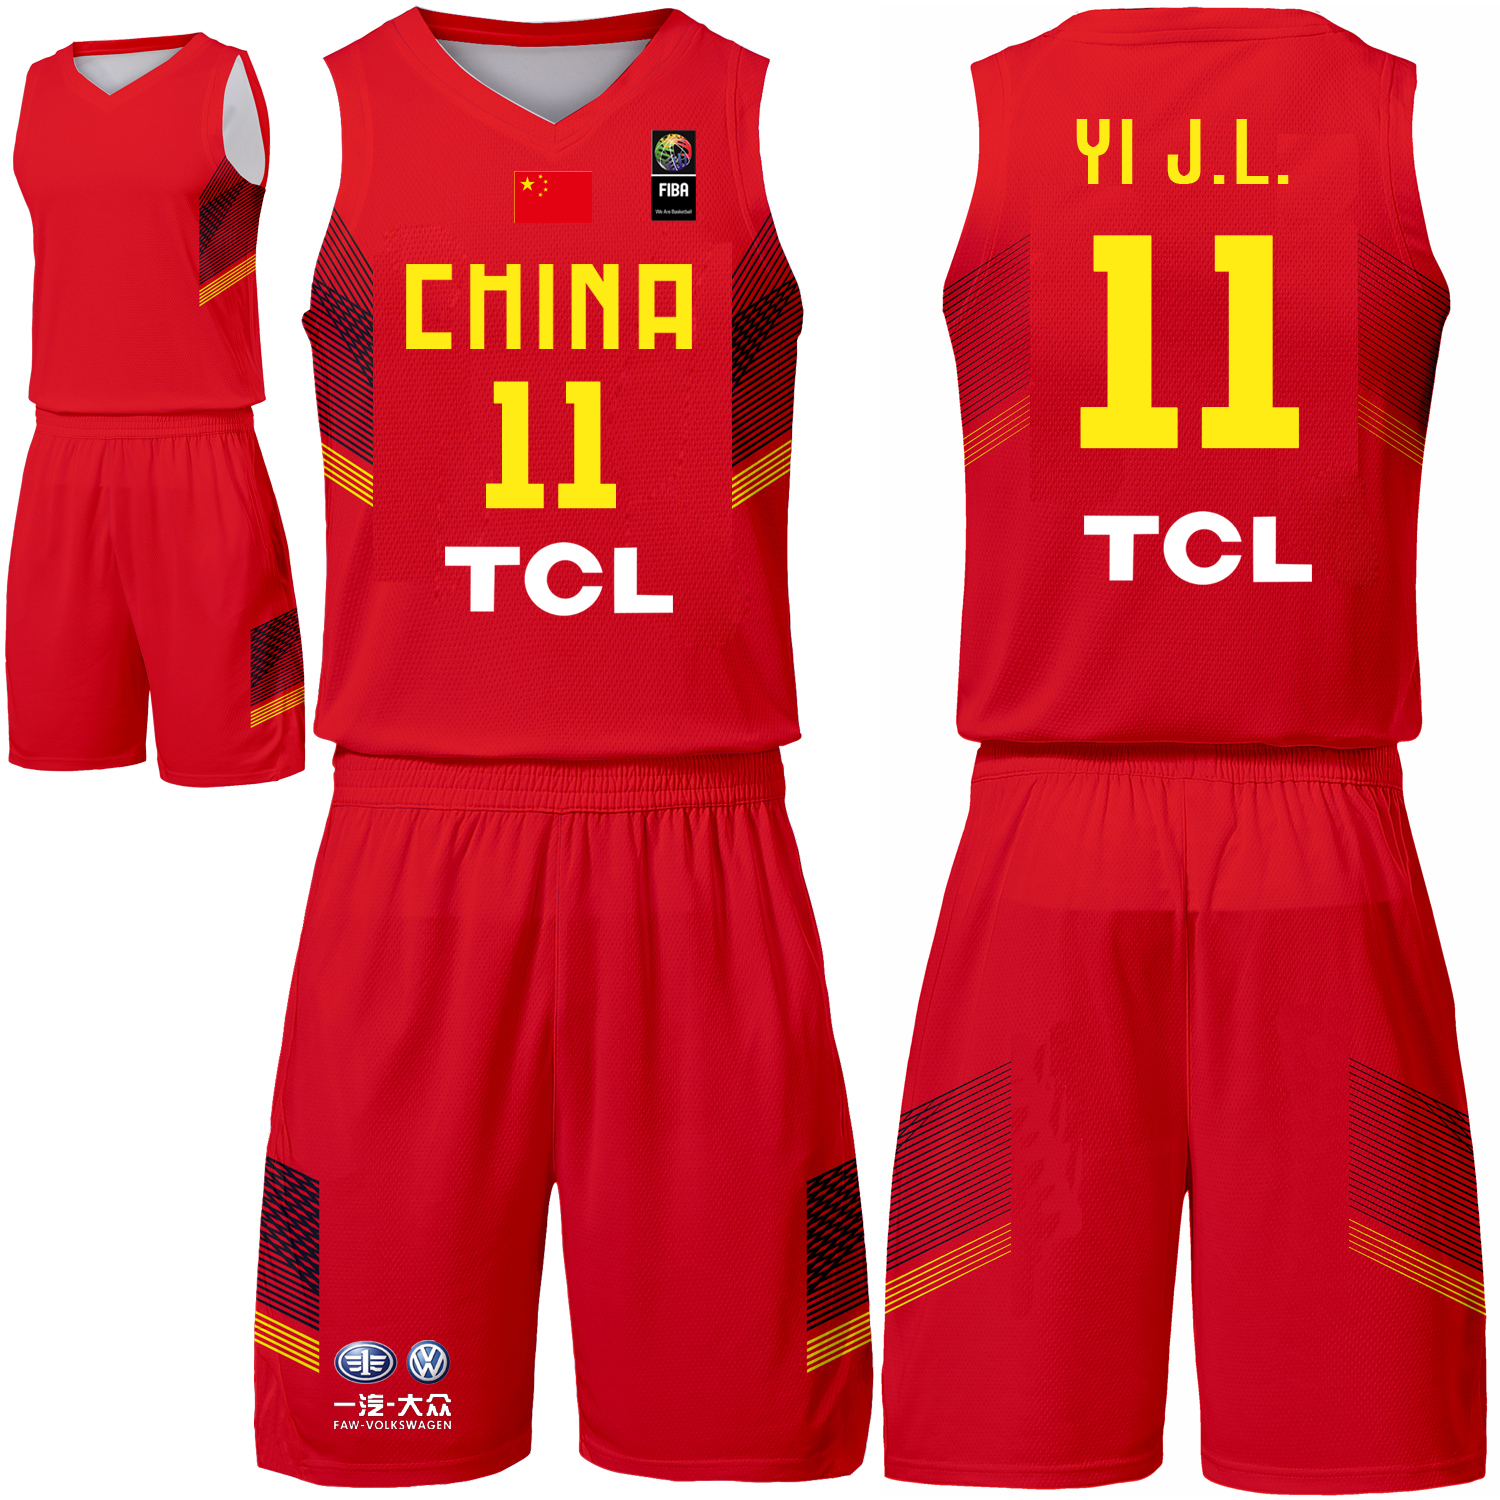 中国男篮球衣易建联11号长沙亚锦赛中国队篮球比赛服团购印号LOGO